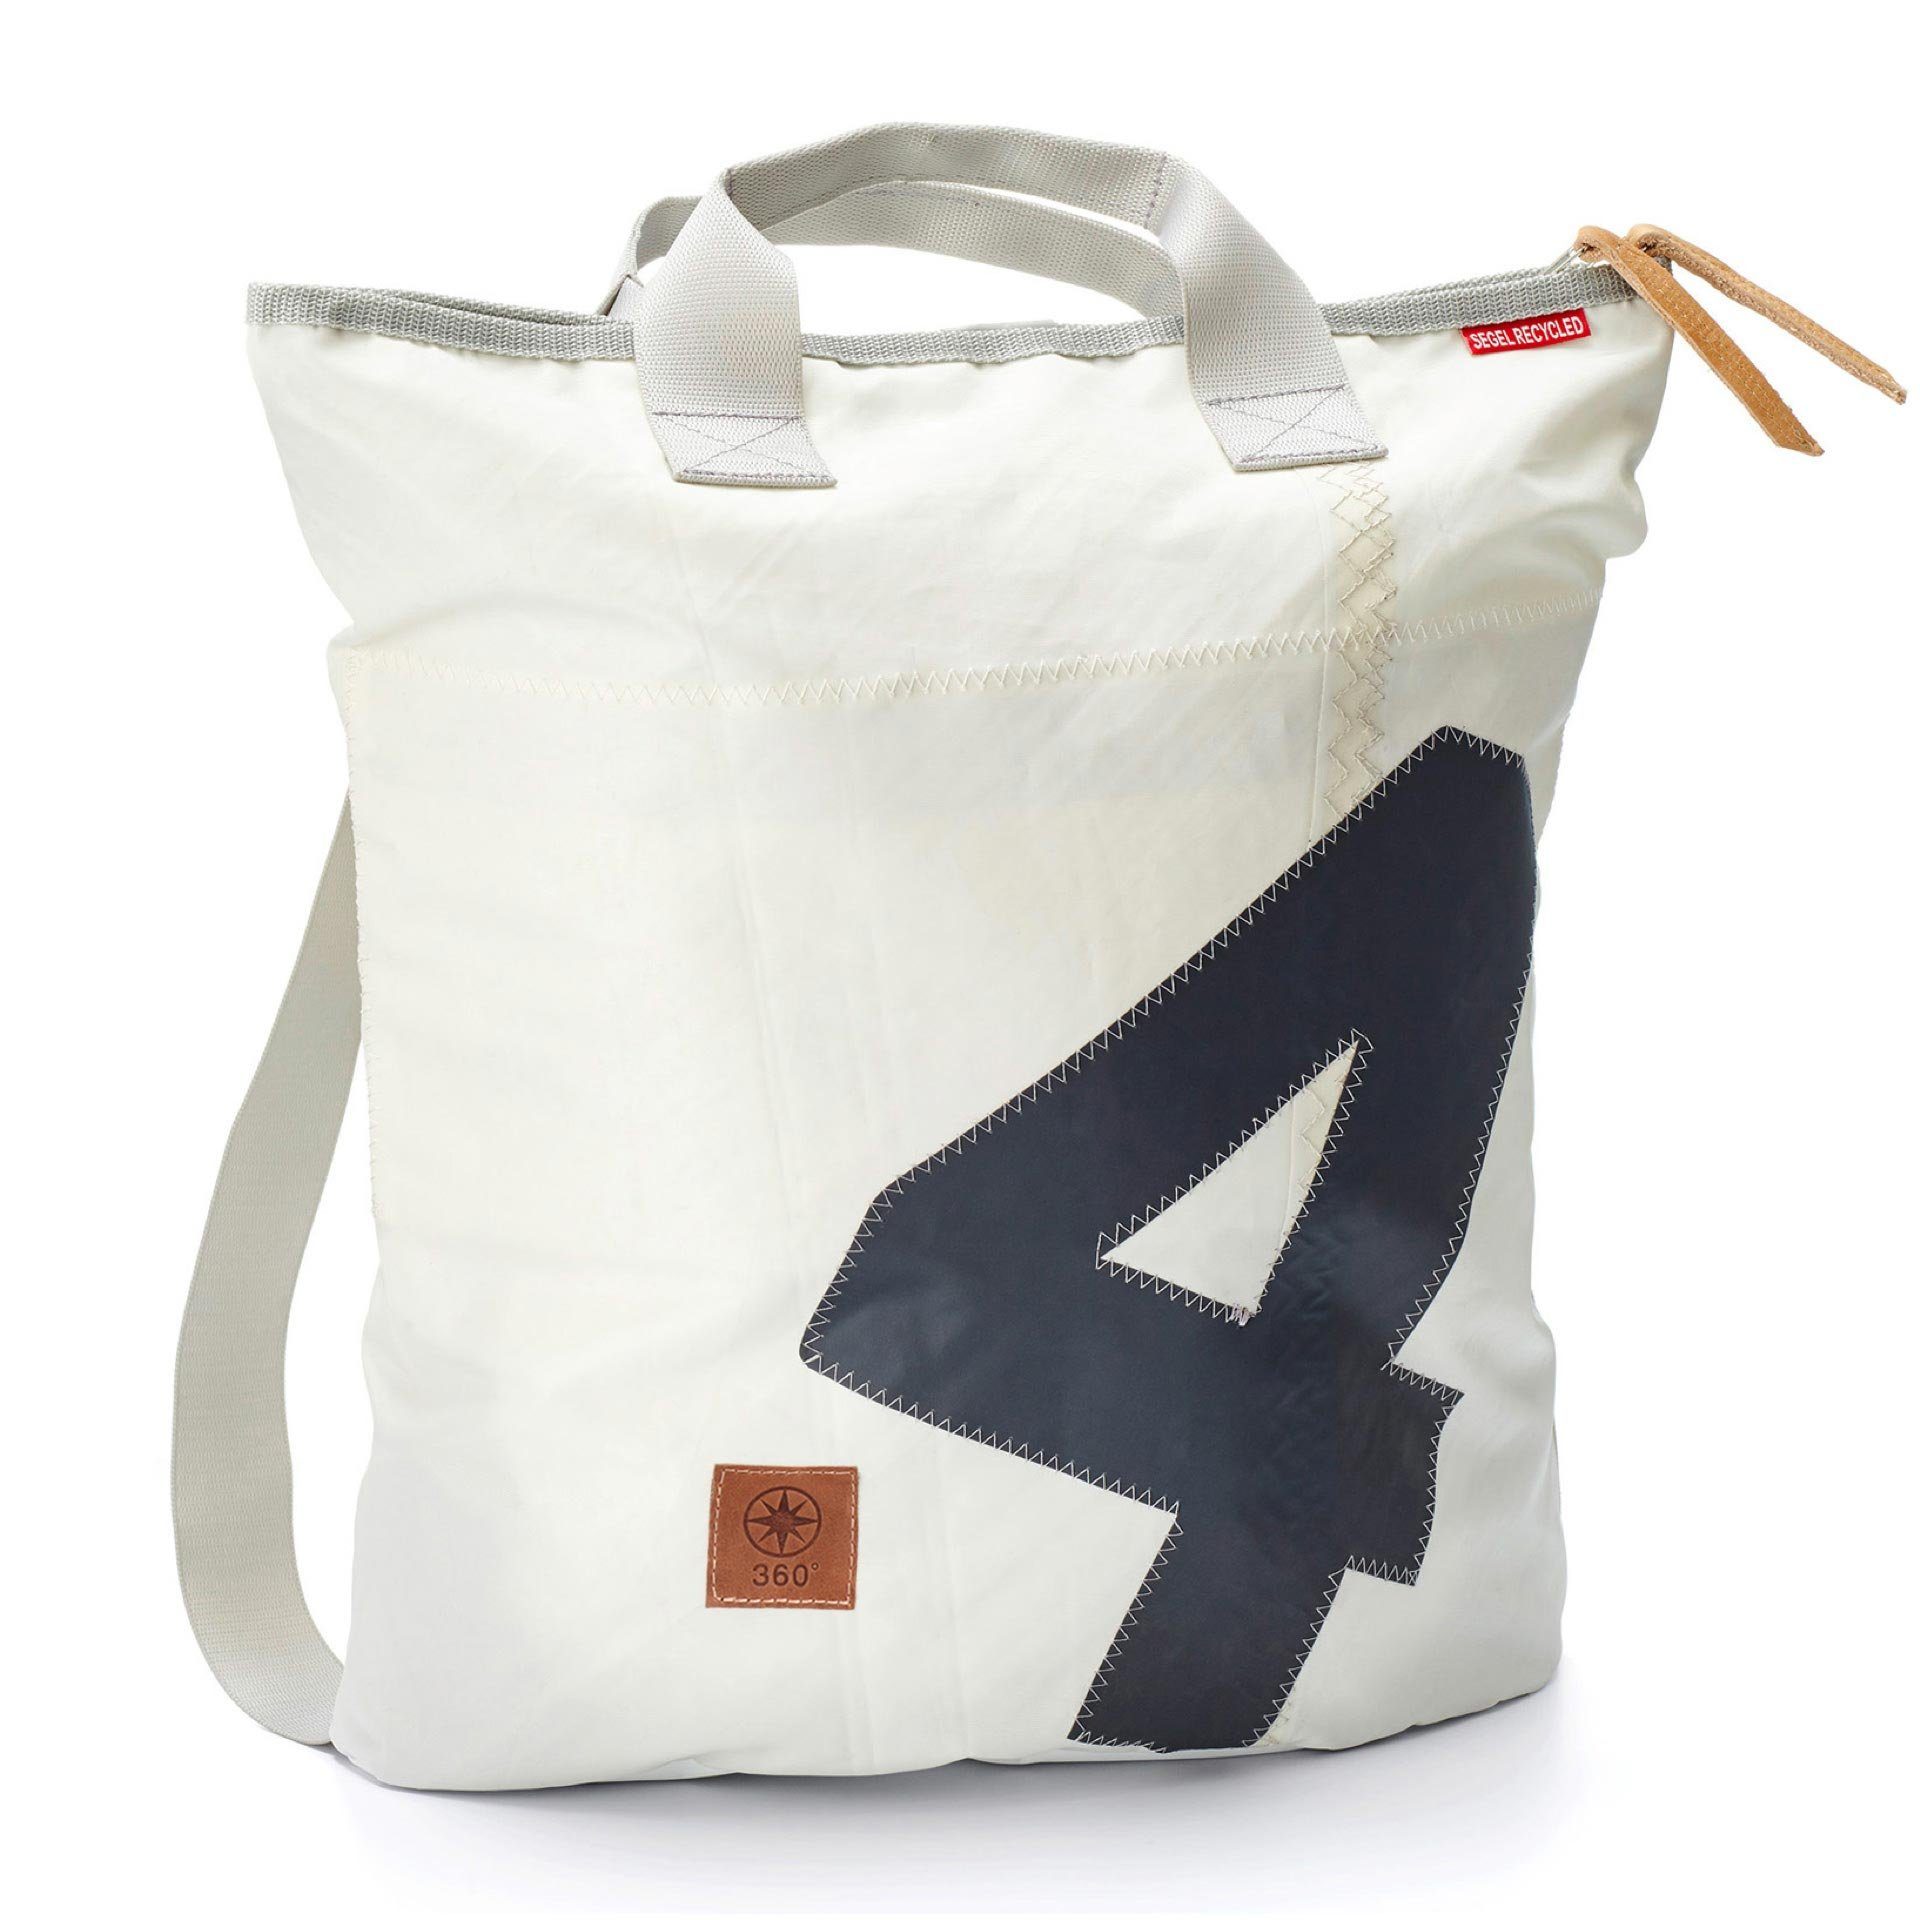 Freizeitrucksack 360 recyceltes Ketsch Tasche Segeltuch Rucksack von 360Grad Weiß Grau Grad